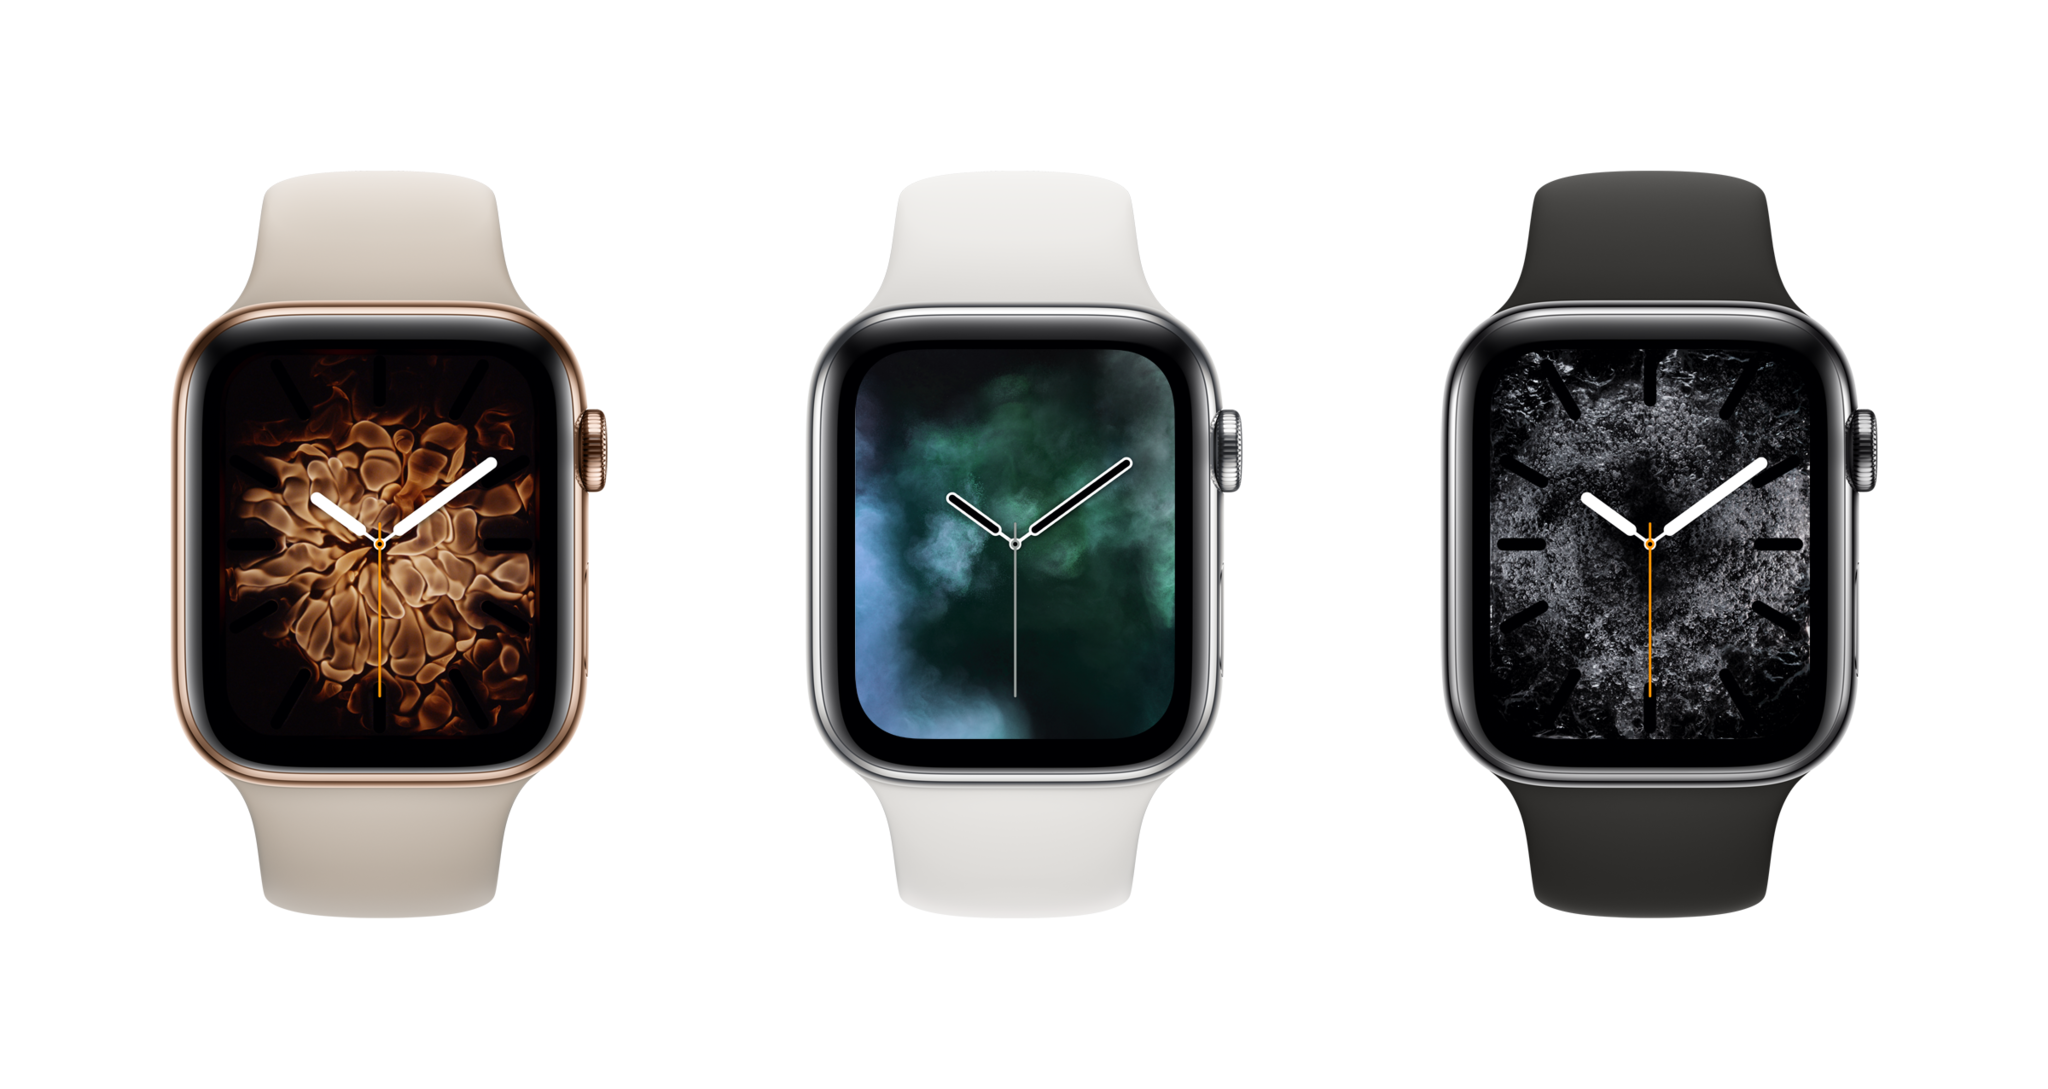 Apple watch Series 4. Apple watch 3 LTE. Apple watch Series 4 цвета. Apple watch 4 44mm Ceramic. Чем отличаются часы apple